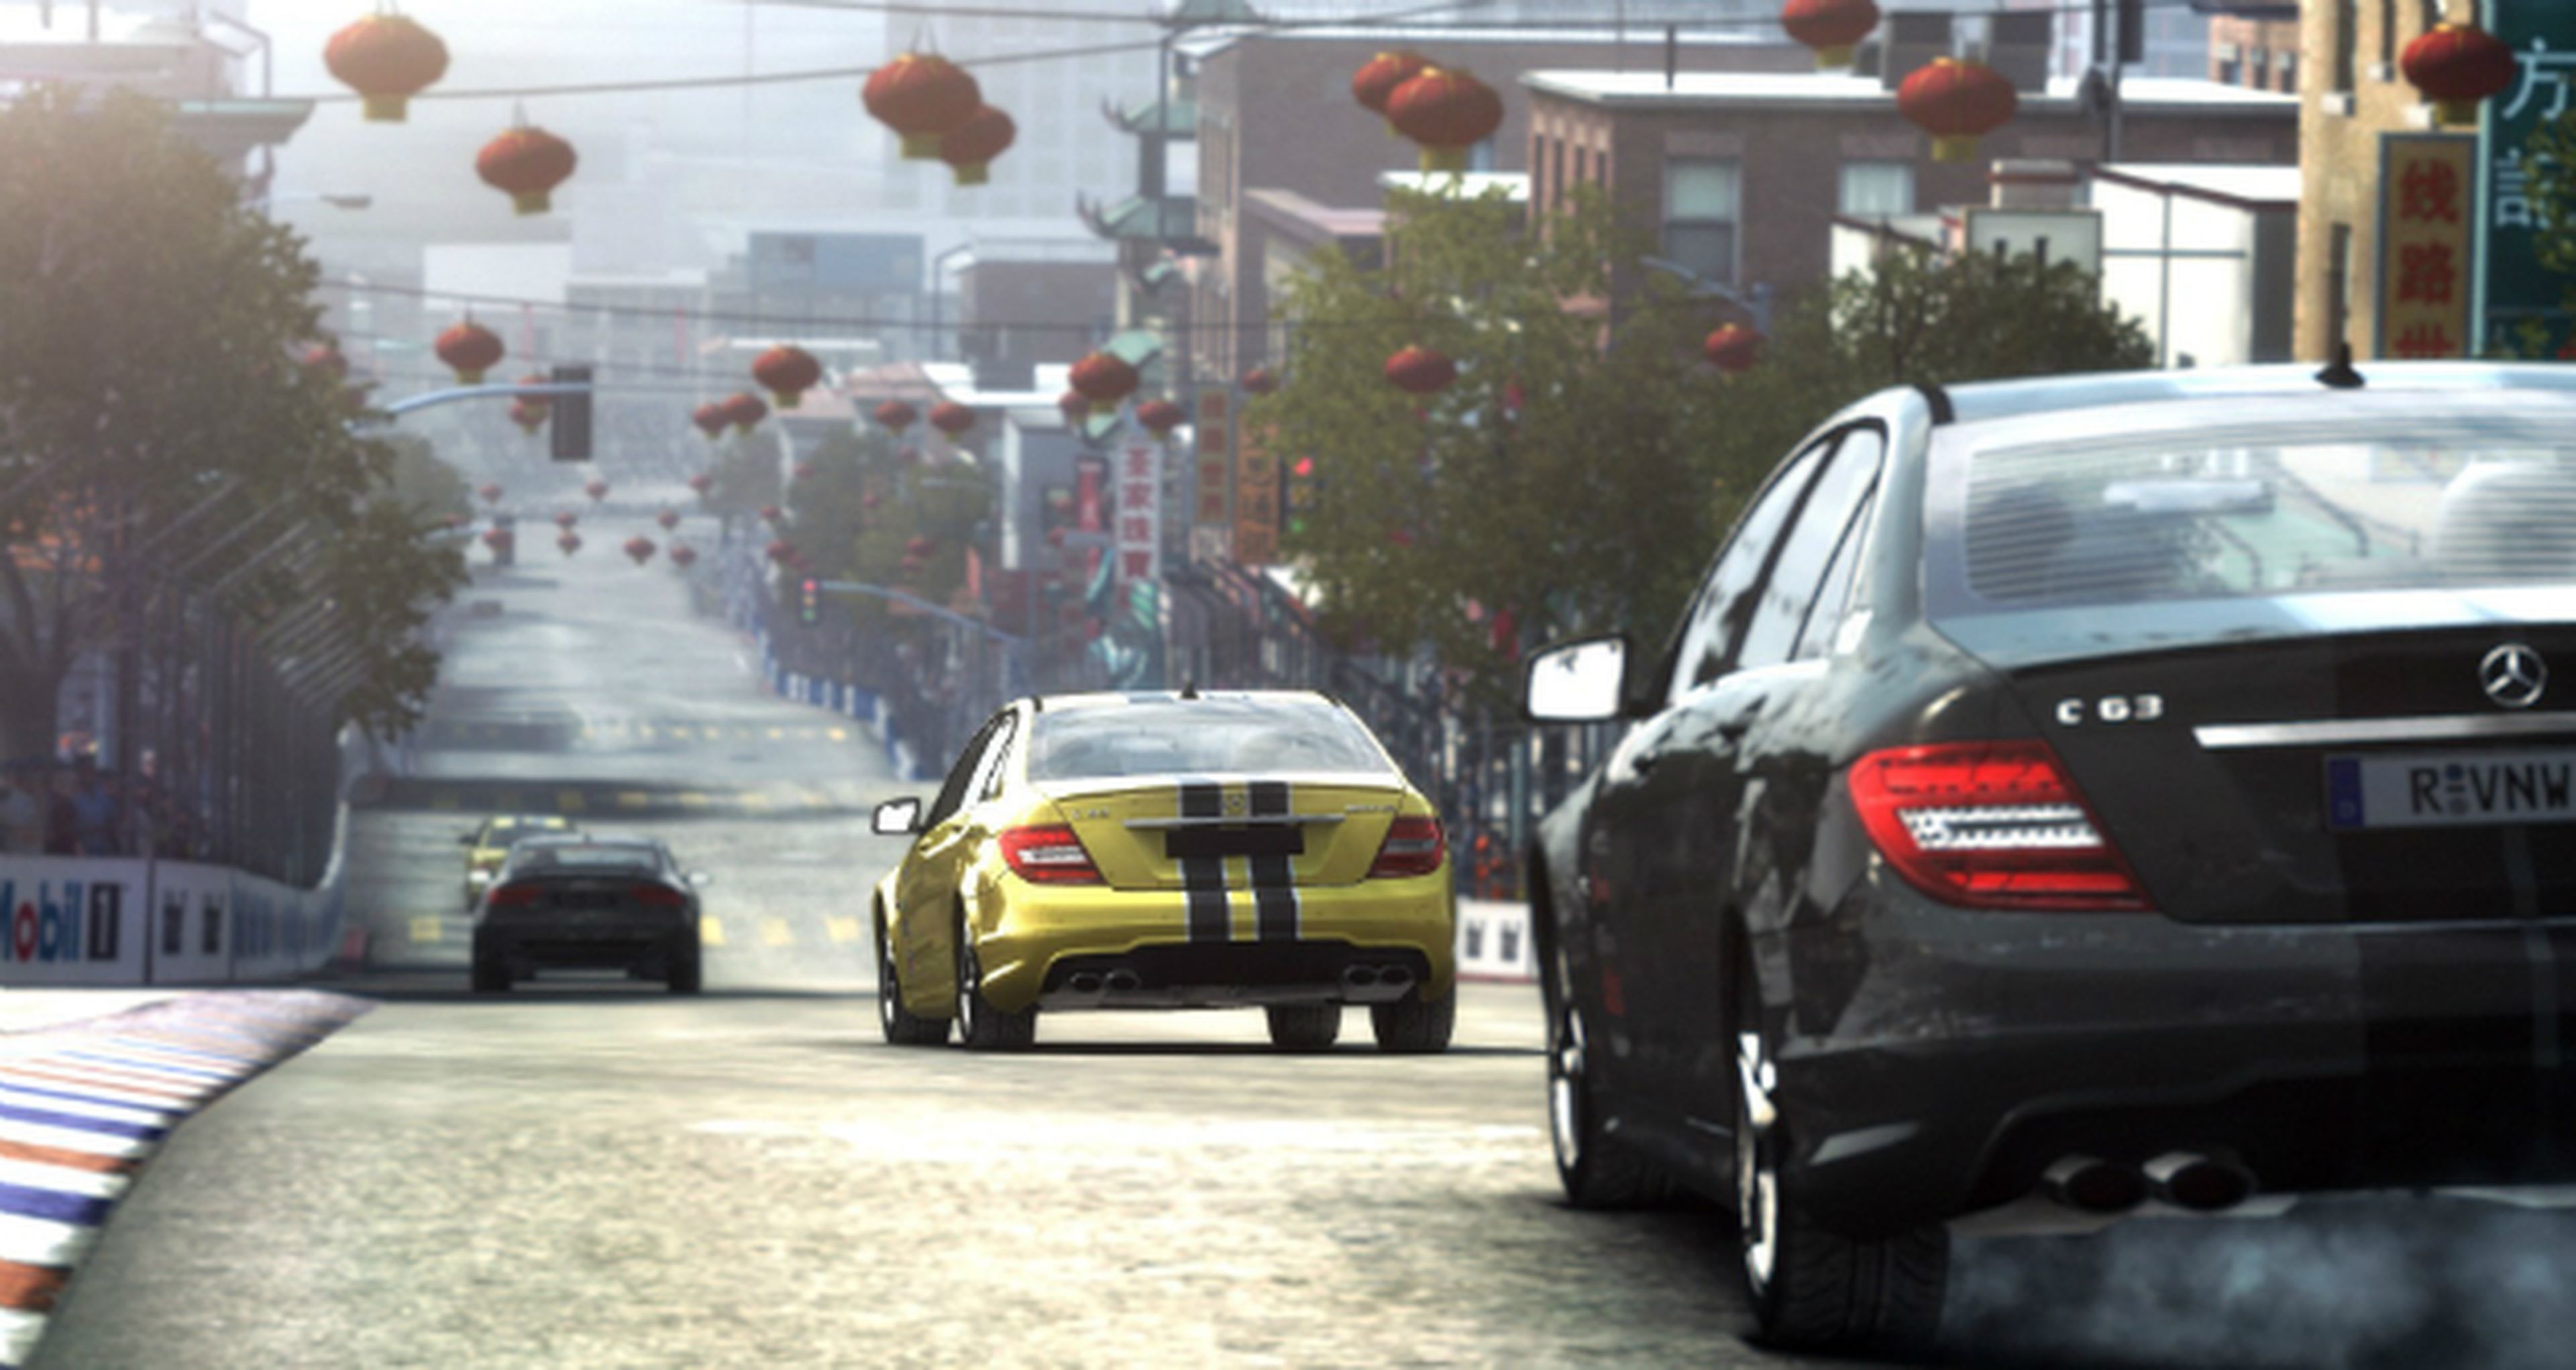 Anunciado GRID Autosport para PS3, Xbox 360 y PC